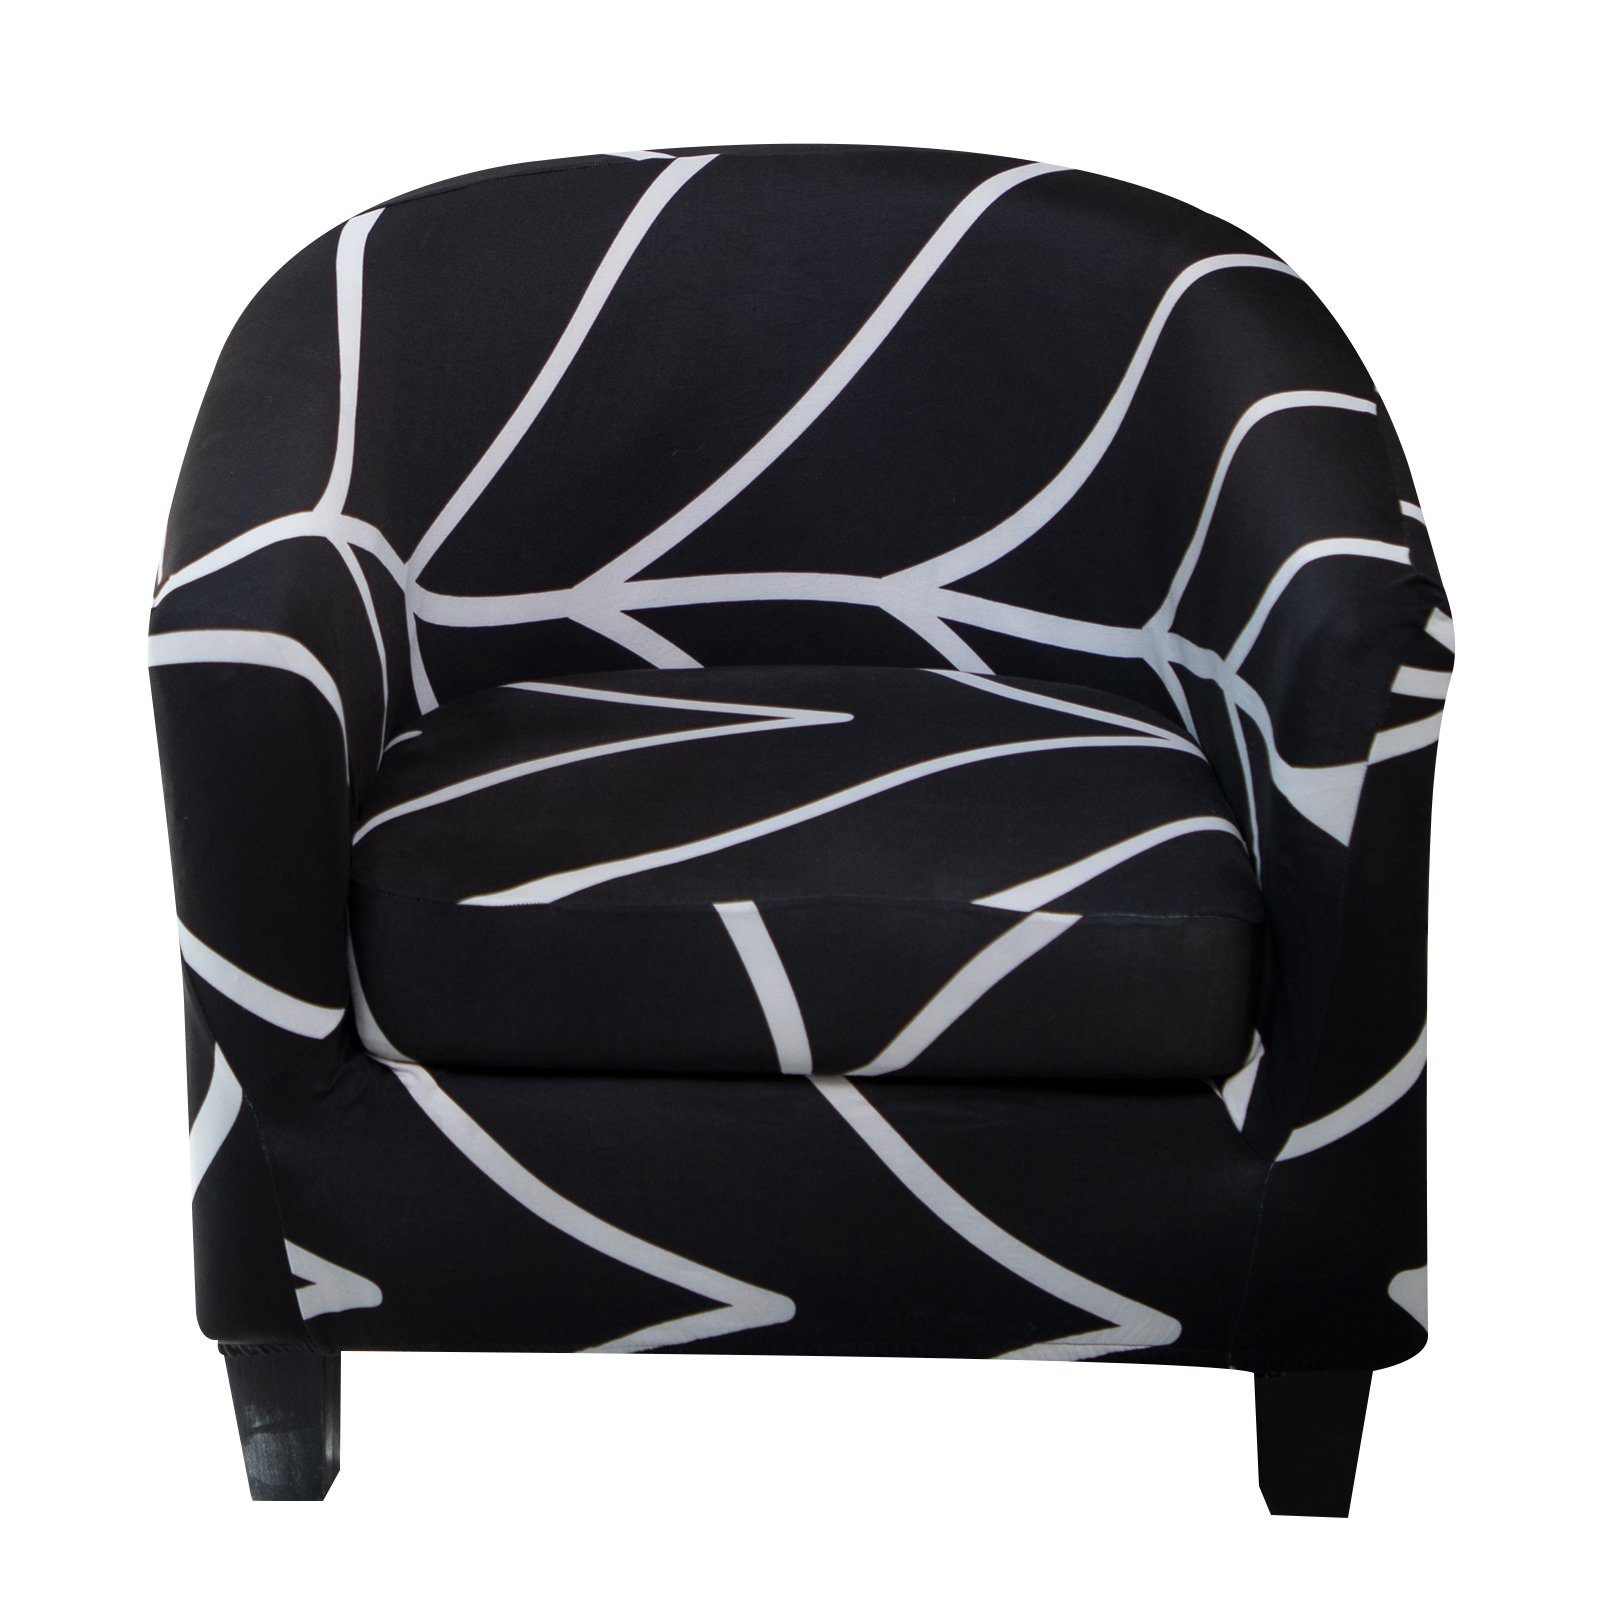 Chair Barrel Muster, geometrisches Einzelsessel, Schwarz Akzentstuhl für Sesselhusse gedrucktes Stretch, Rosnek, florales